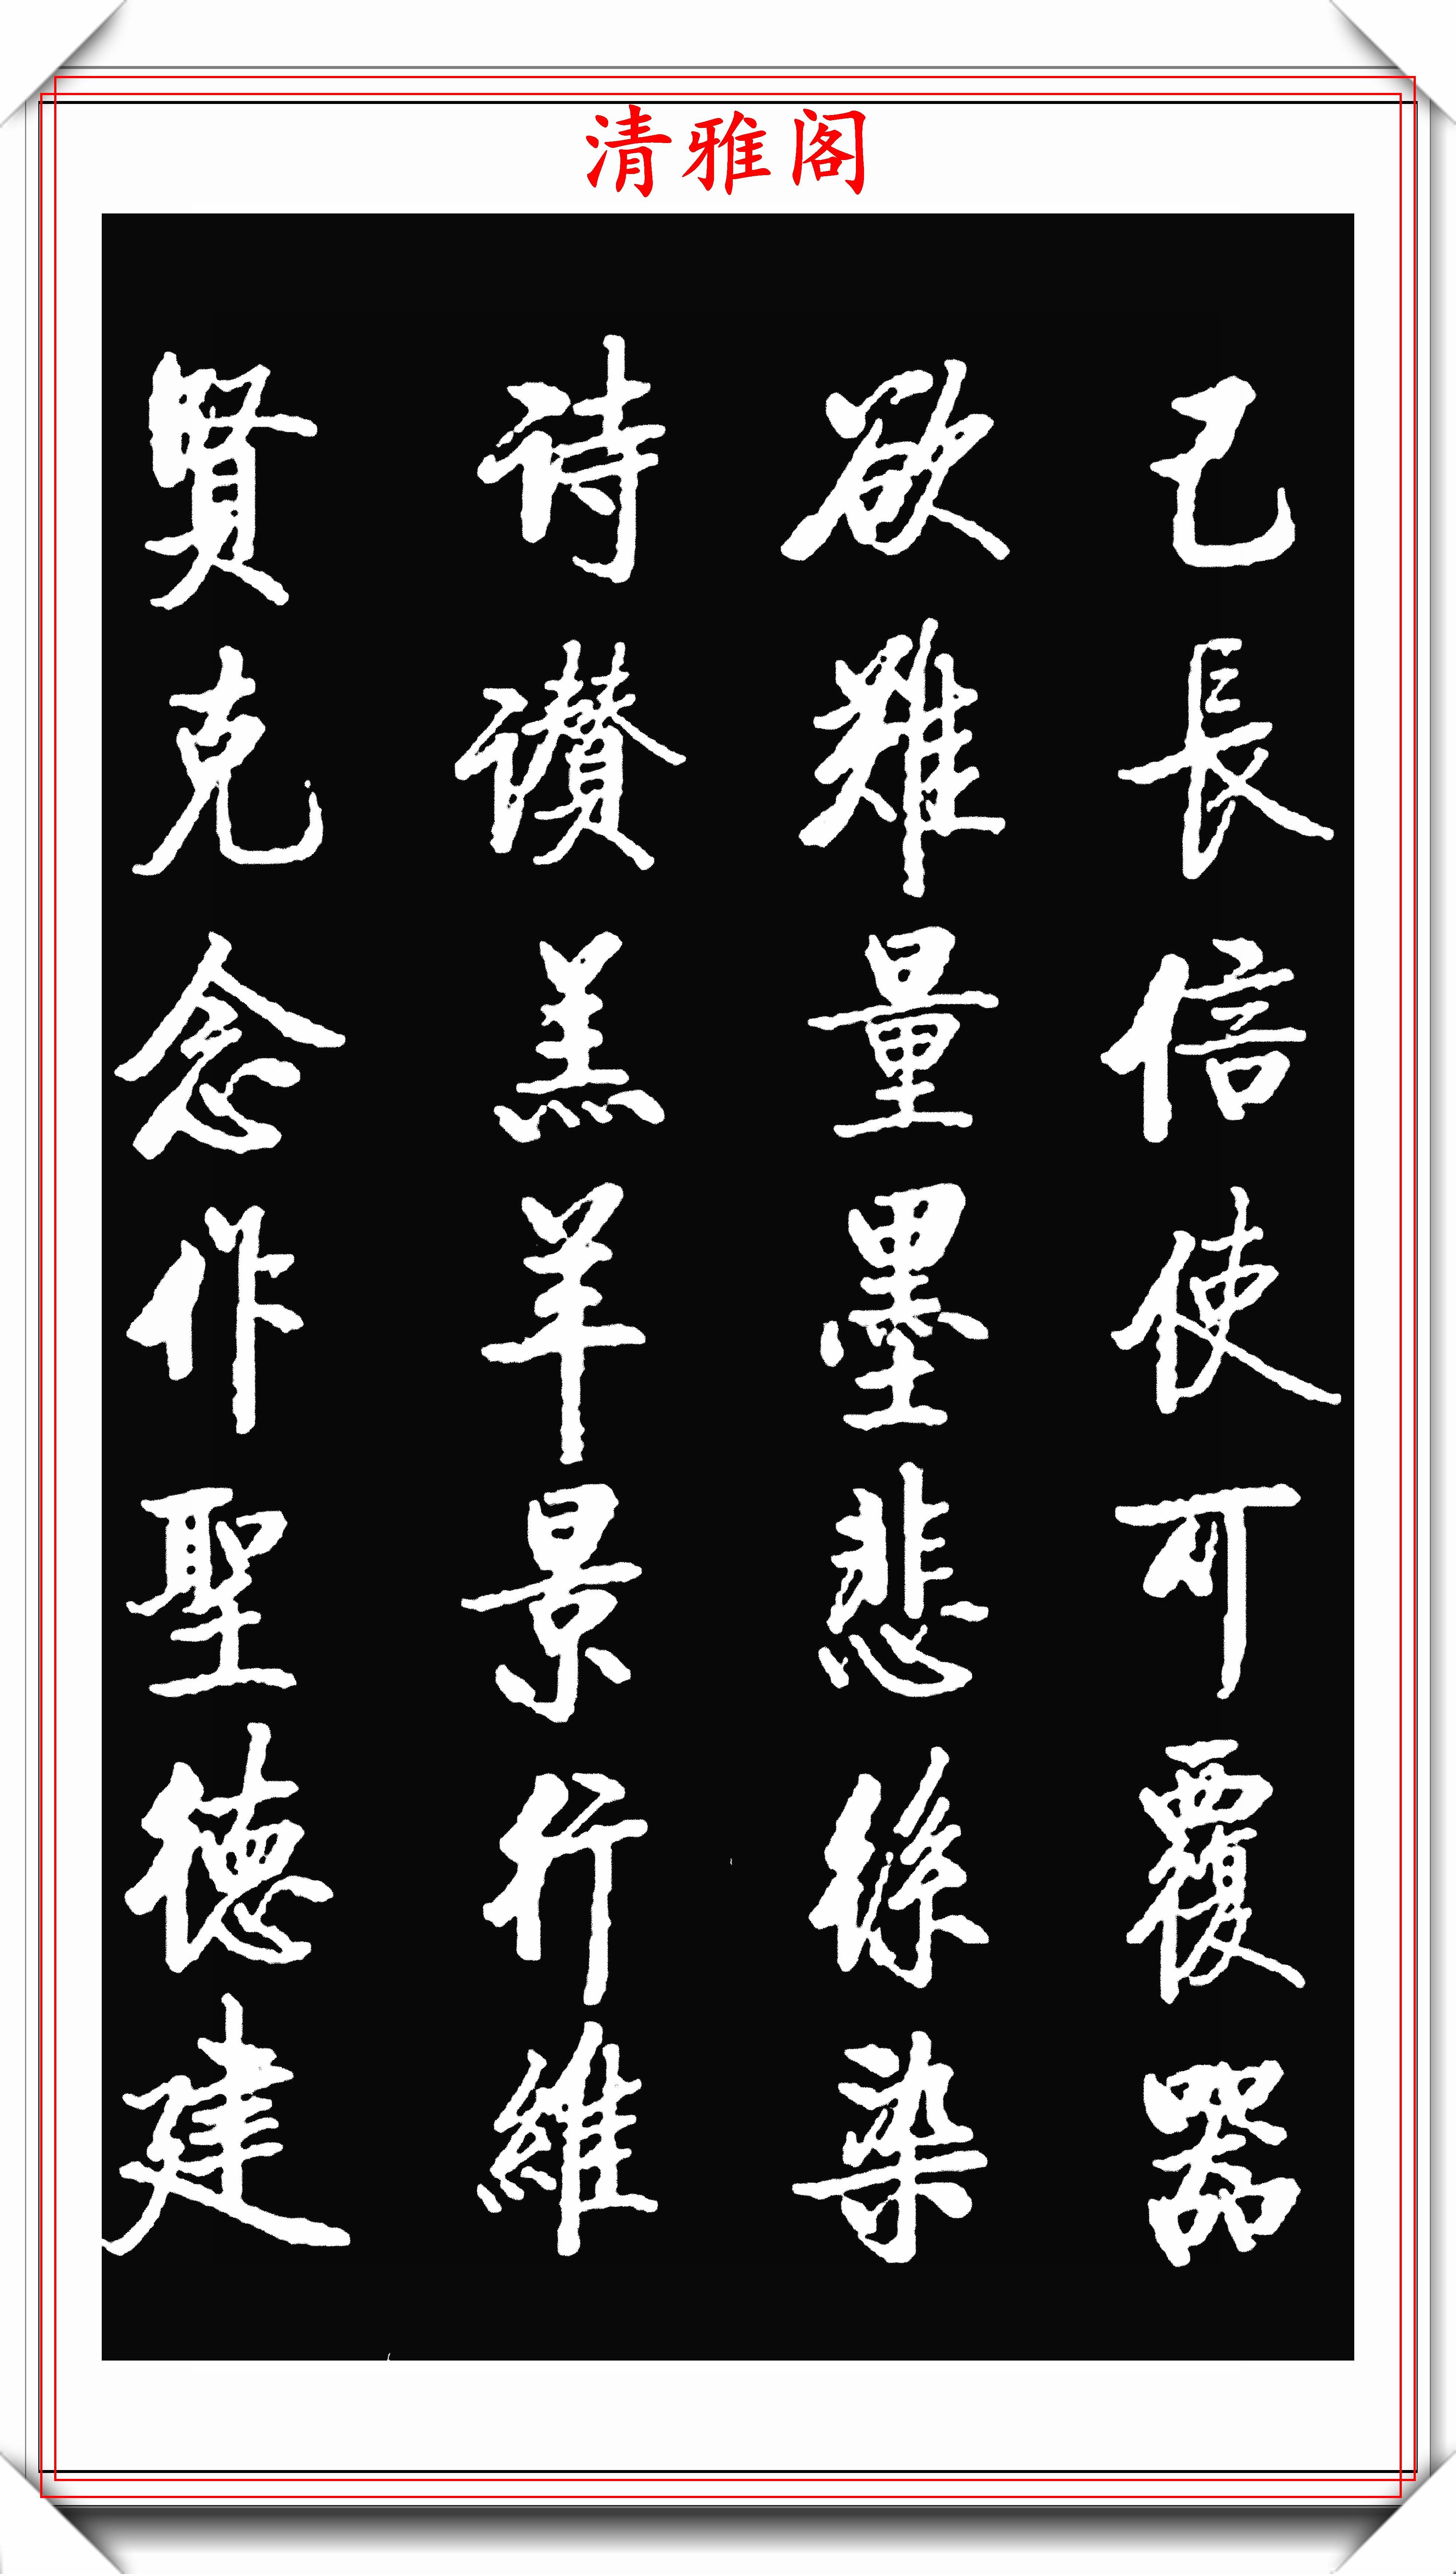 著名书法大家启功,1942年出版的楷书字帖欣赏,学启体的巅峰字帖